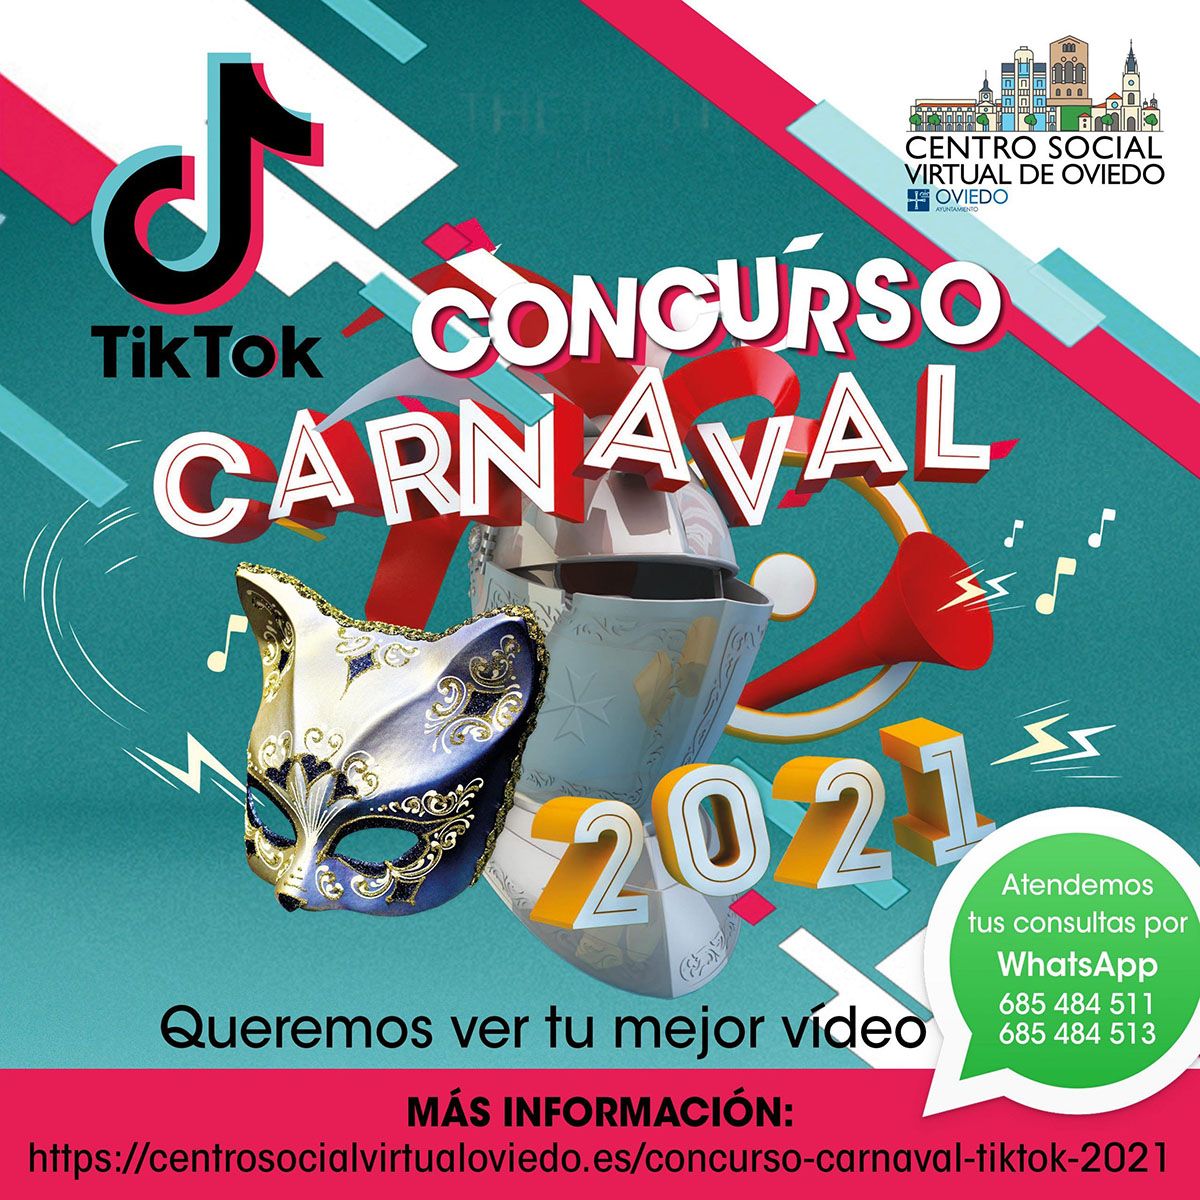 Concurso Carnaval en TIK-TOK instagram post